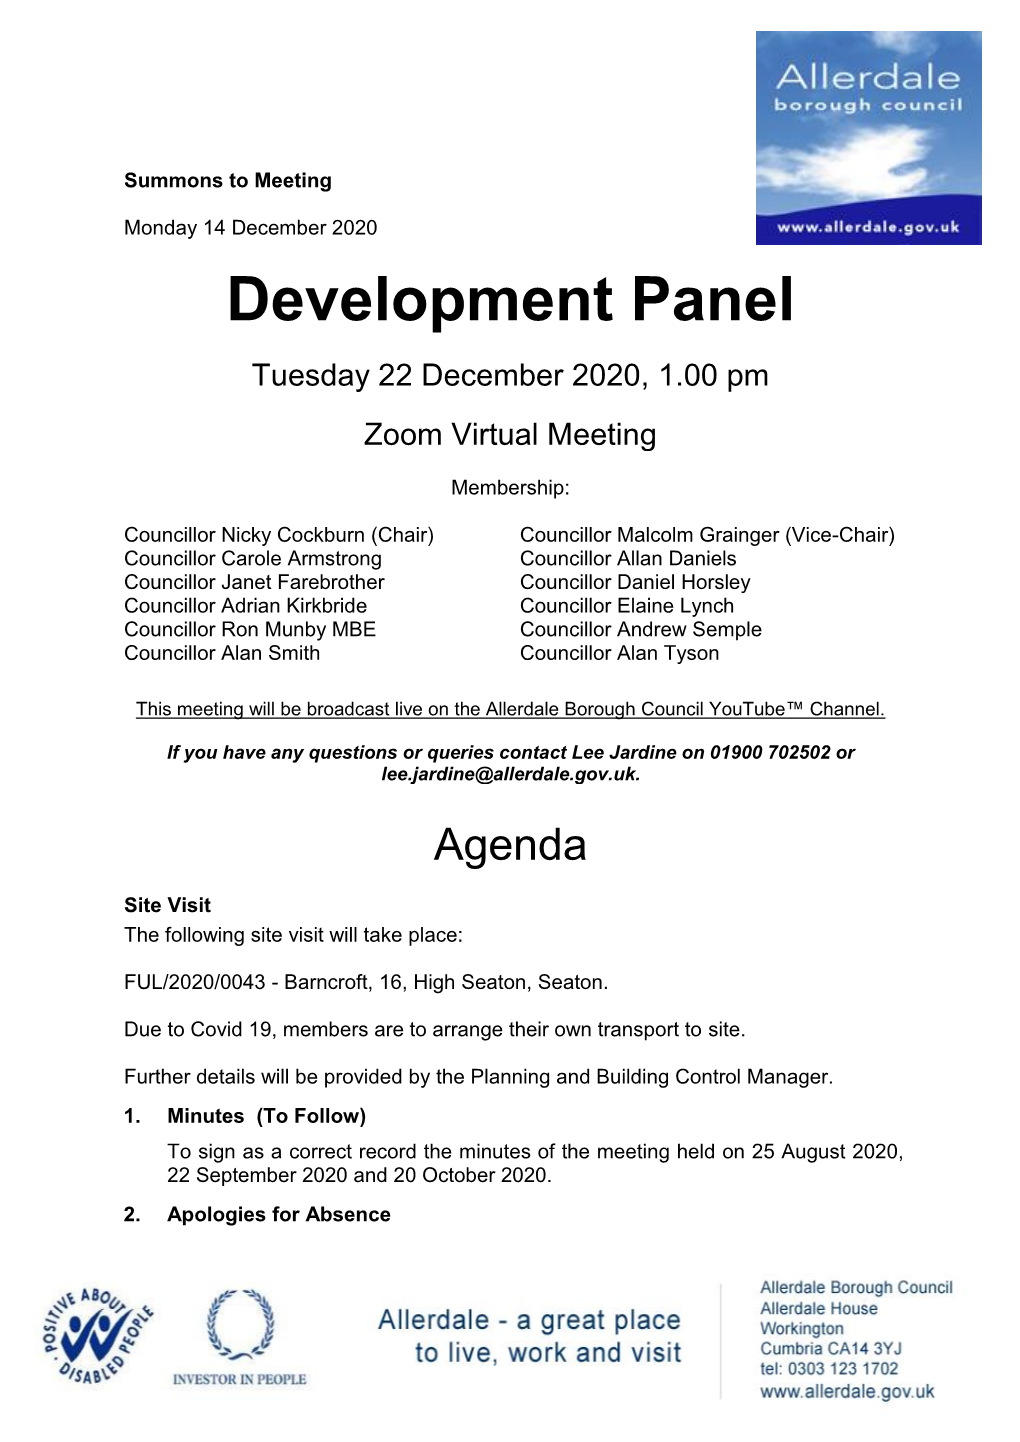 Agenda Document for Development Panel, 22/12/2020 13:00